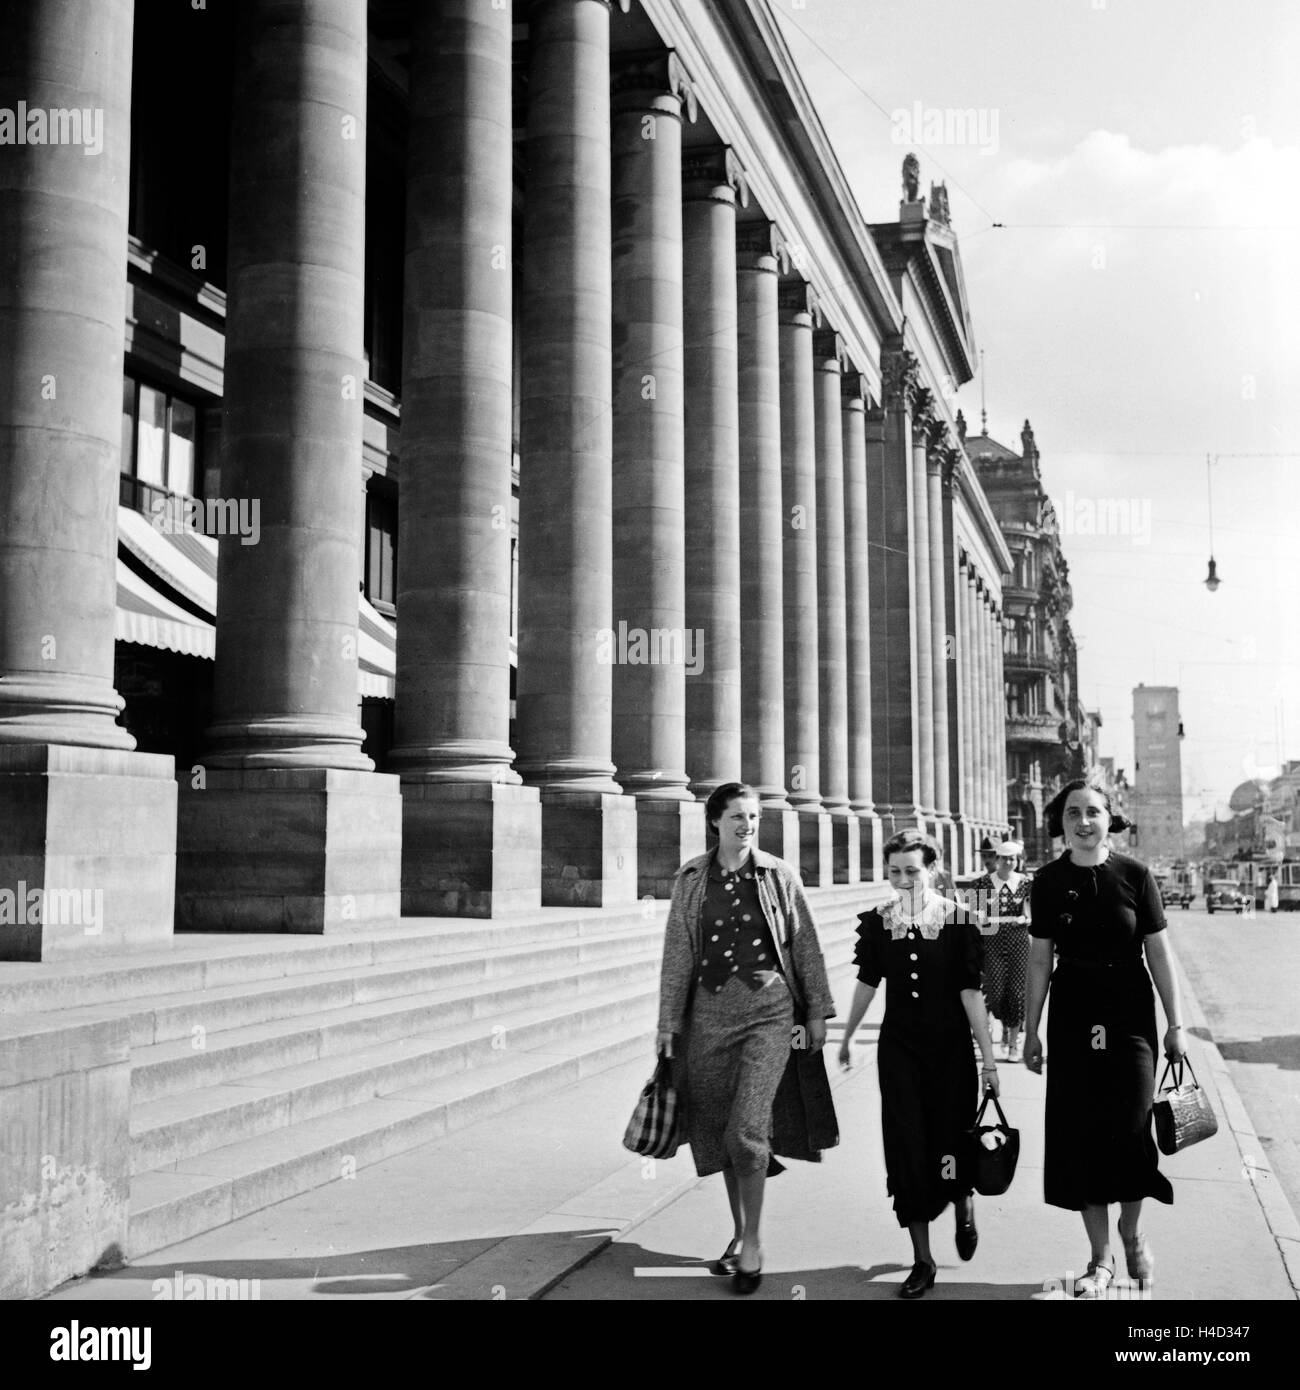 Drei Frauen kommen vom Einkauf am Königsbau a Stoccarda vorbei, Deutschland 1930er Jahre. Tre donne provenienti dai negozi lungo il palazzo Koenigsbau a Stoccarda, Germania 1930s. Foto Stock